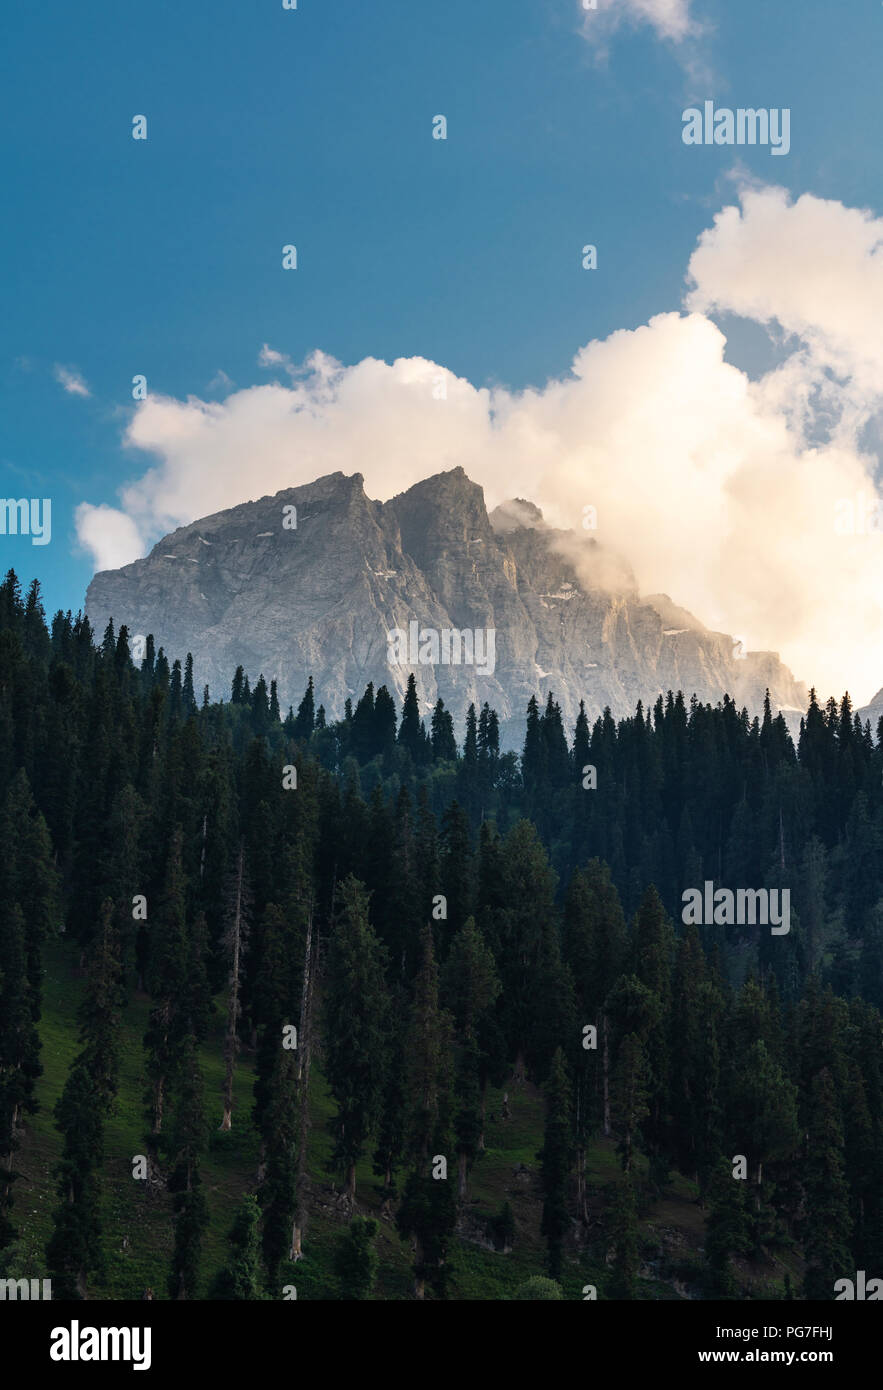 Malerische Berg- und Kiefernwald Tal mit weißen Wolken und blauer Himmel in Sonamarg, Jammu und Kaschmir, Indien. Vertikale Zusammensetzung Stockfoto